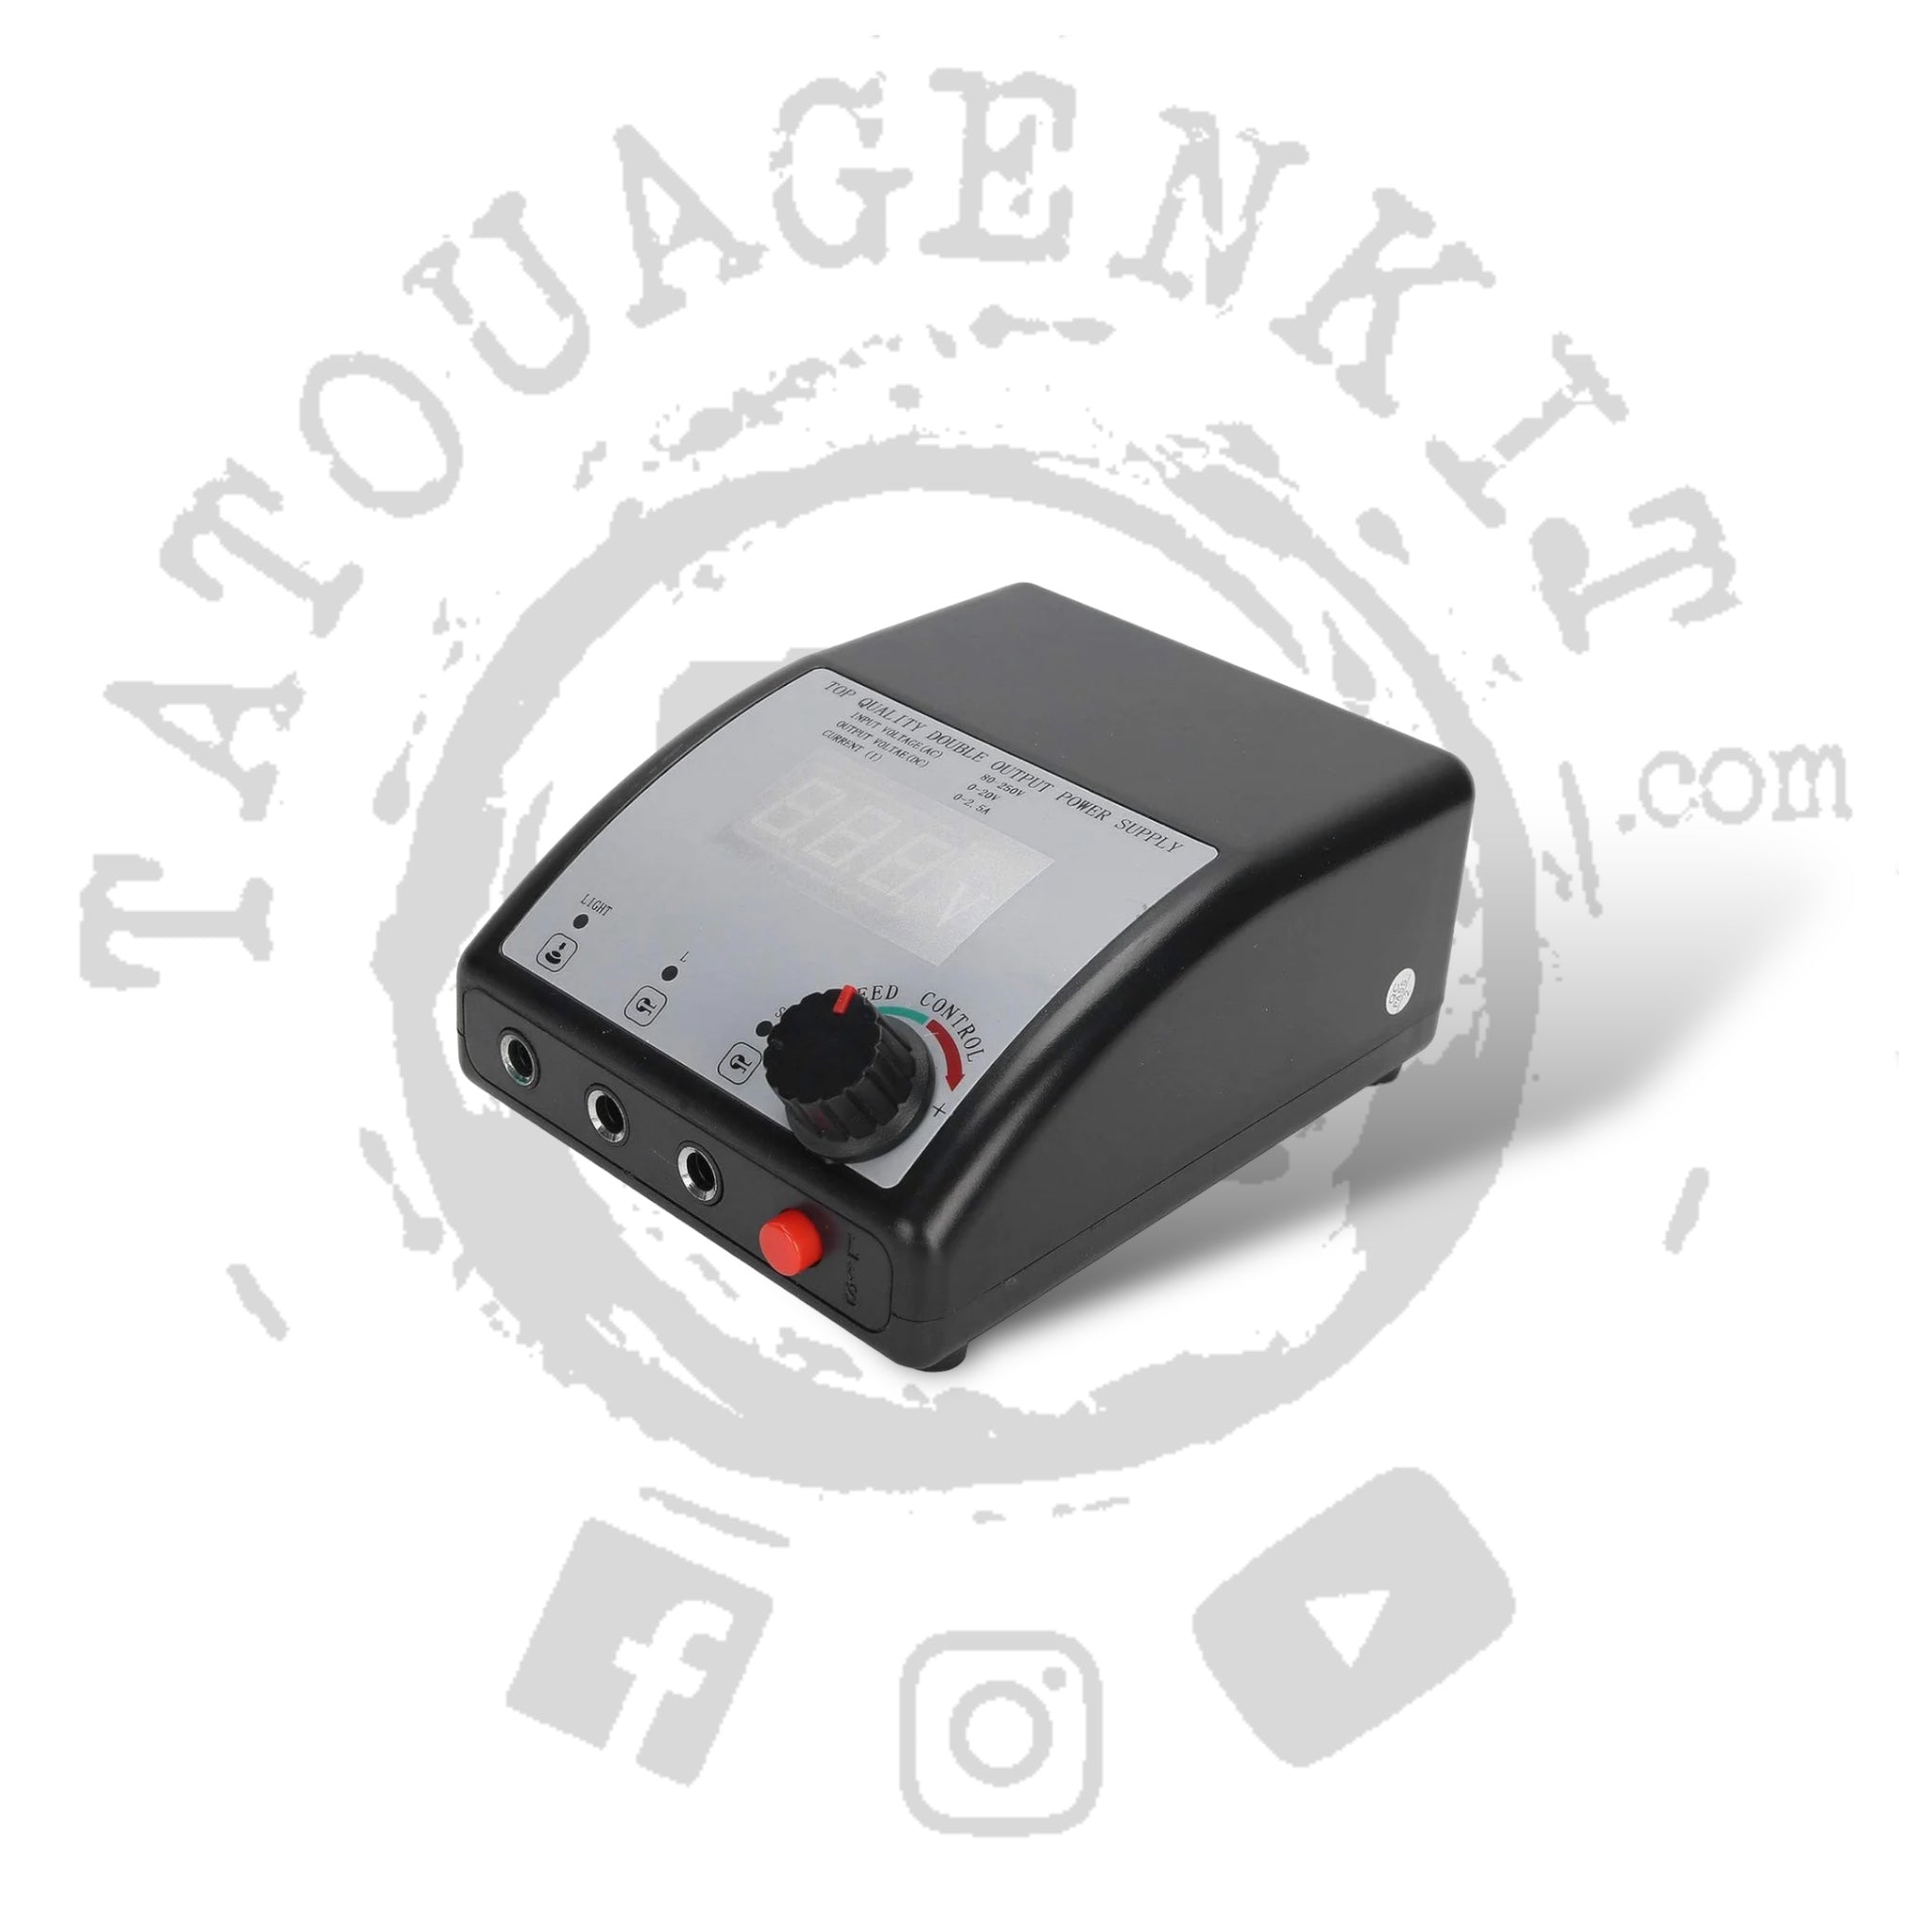 Kit Machine Tatouage (PRP)